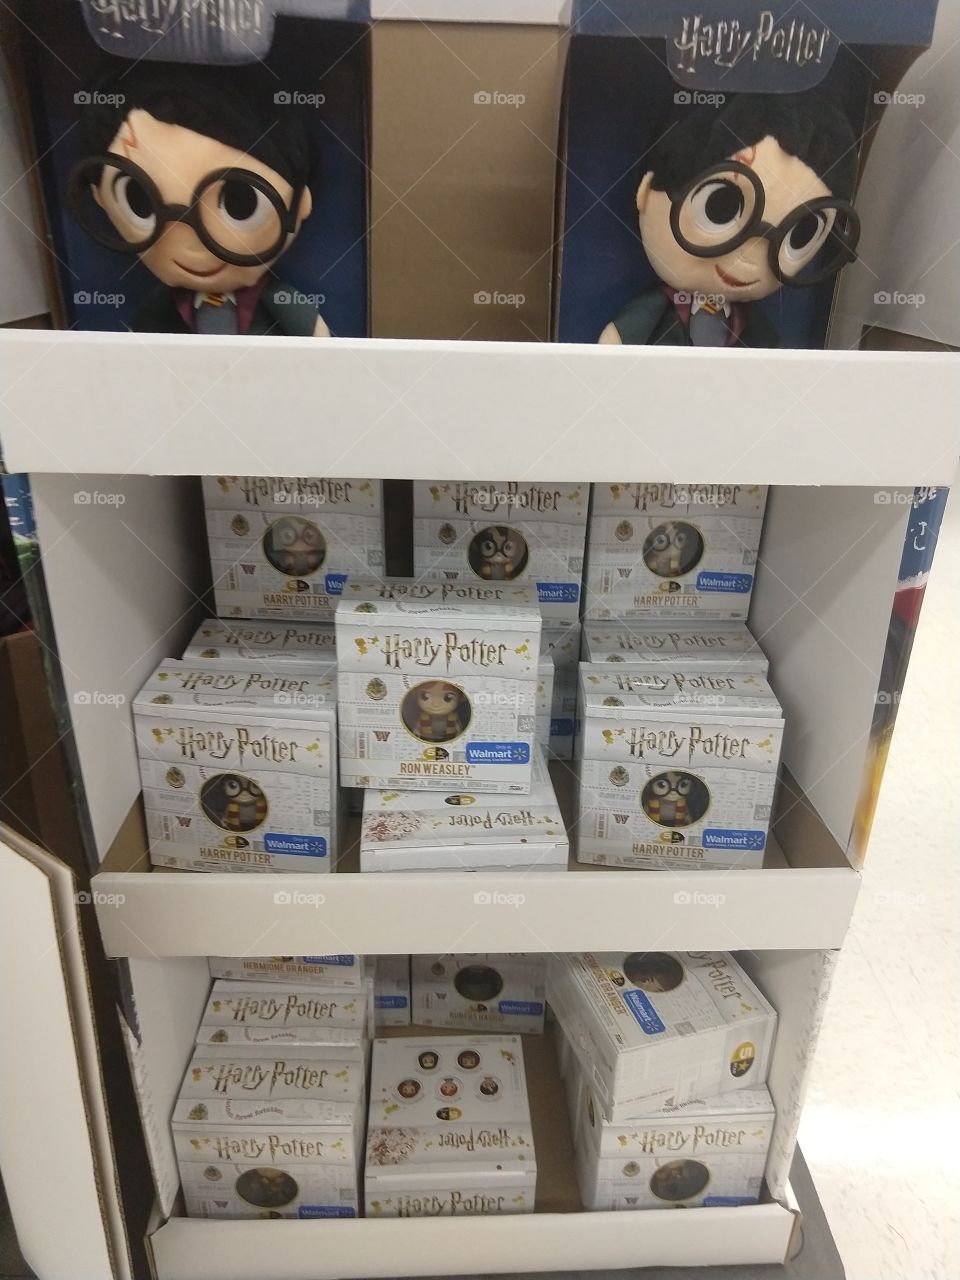 Harry Potter memorabilia located at a local Walmart